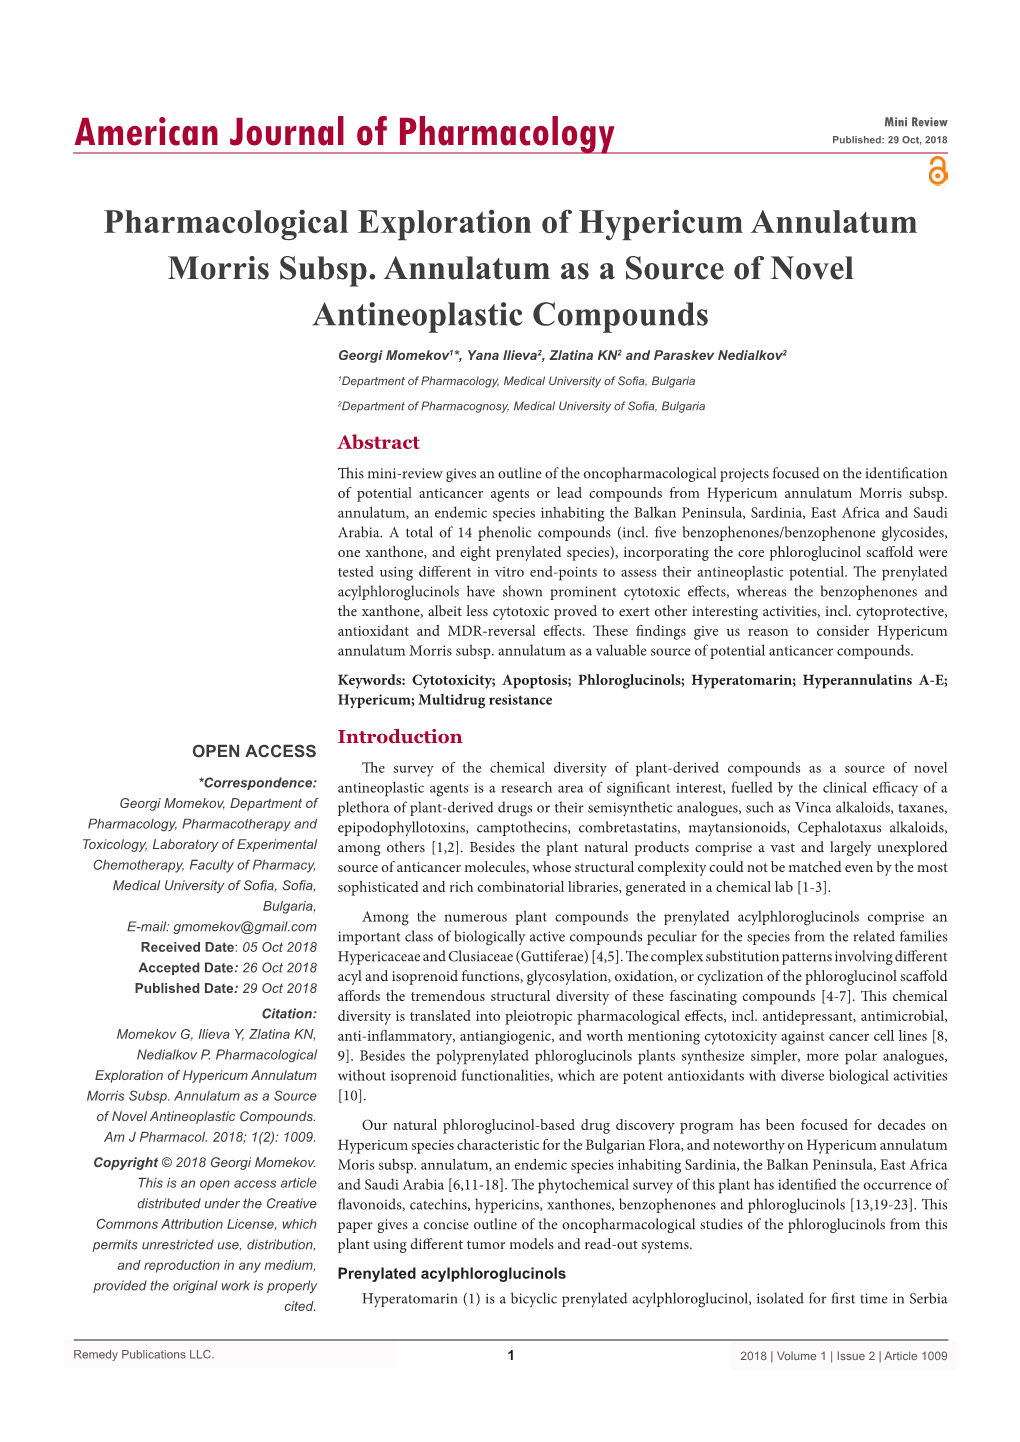 Pharmacological Exploration of Hypericum Annulatum Morris Subsp